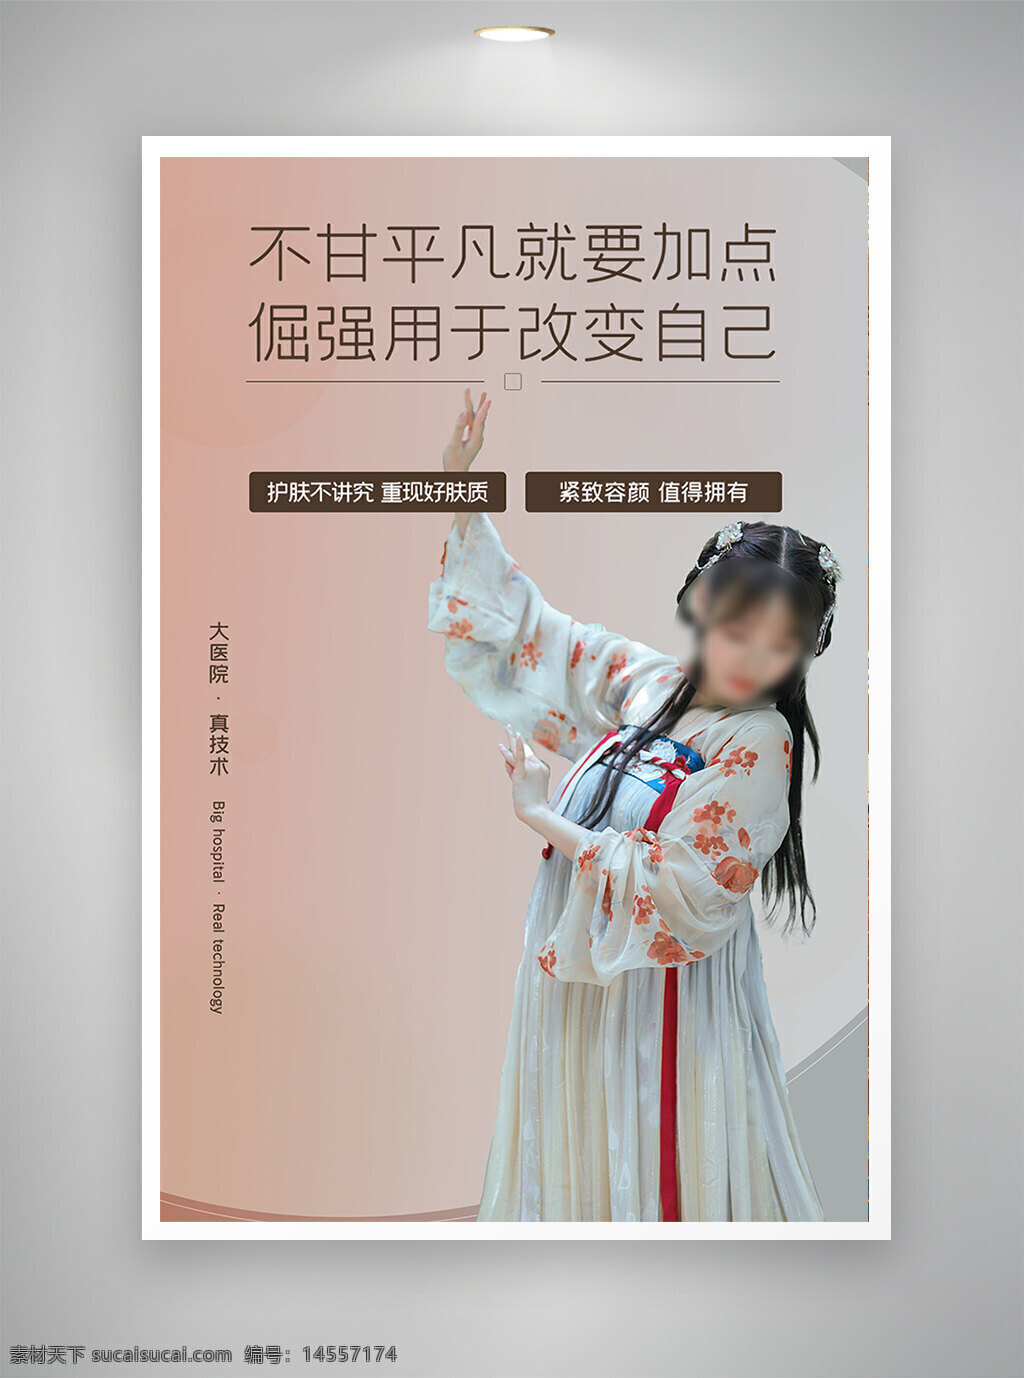 中国风海报 古风海报 促销海报 节日海报 医美海报